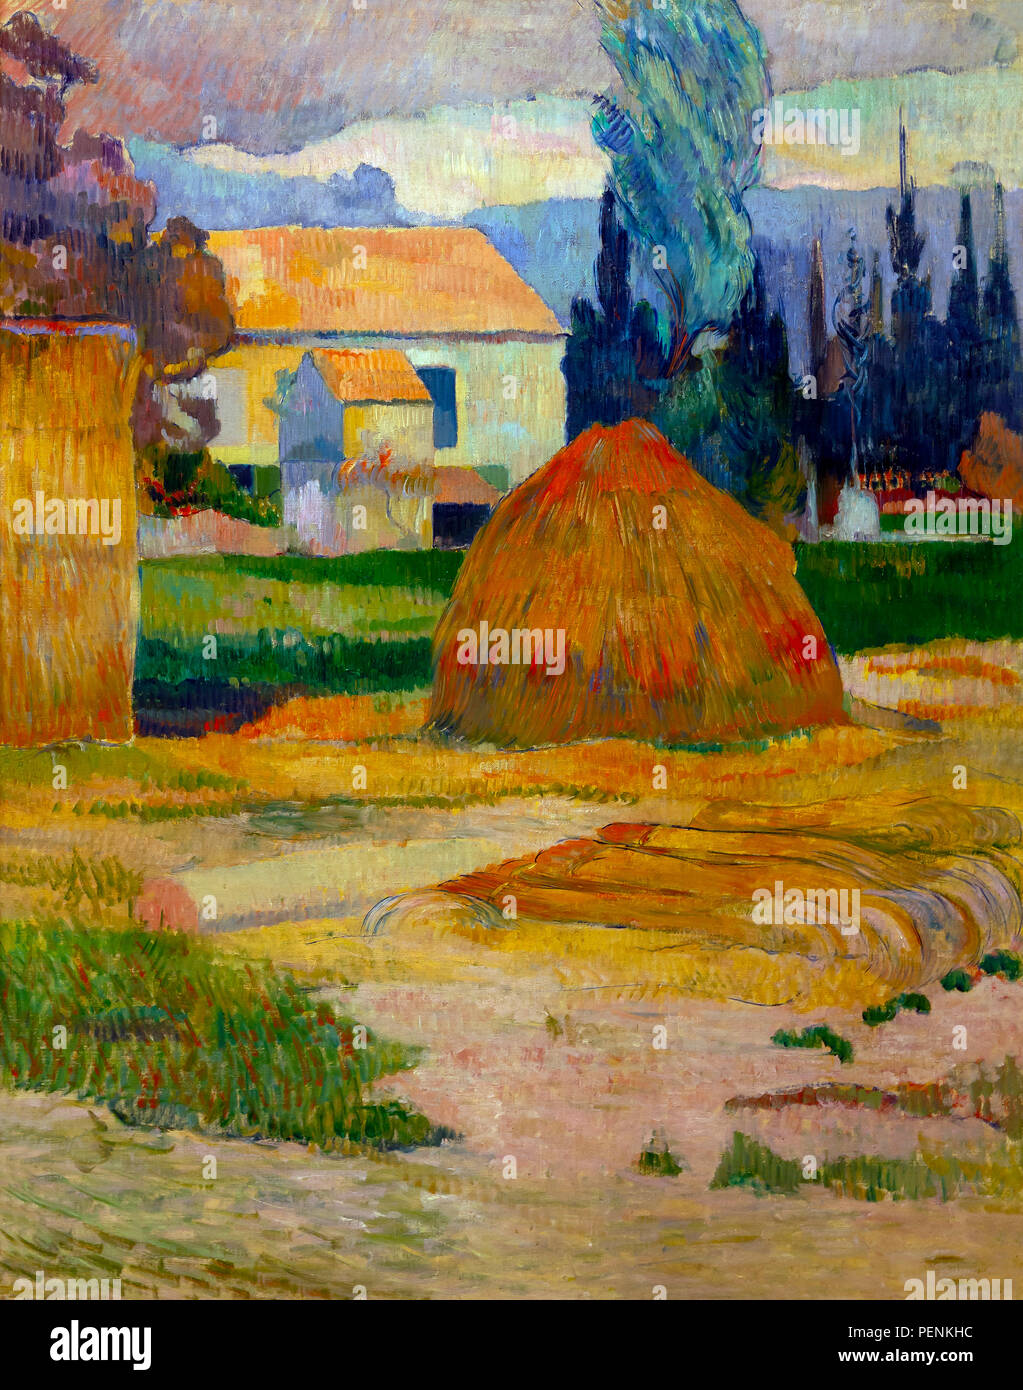 Paysage près d'Arles, Paul Gauguin, 1888, Indianapolis Museum of Art, Indianapolis, Indiana, USA, Amérique du Nord Banque D'Images